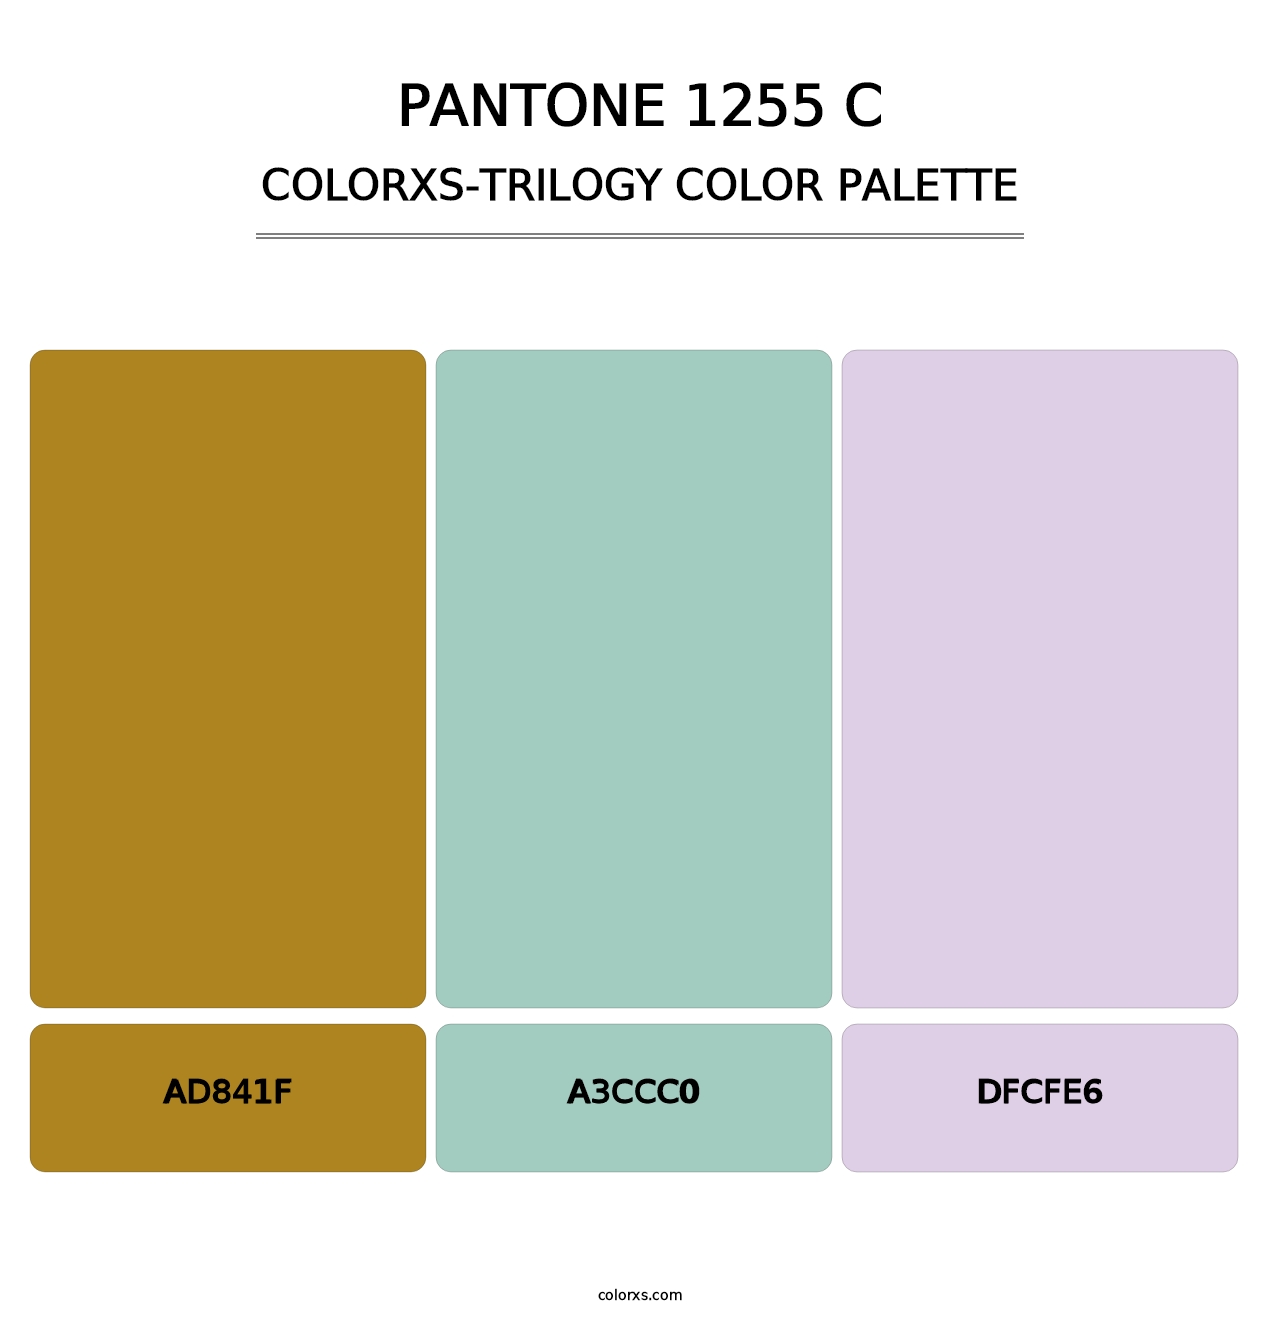 PANTONE 1255 C - Colorxs Trilogy Palette